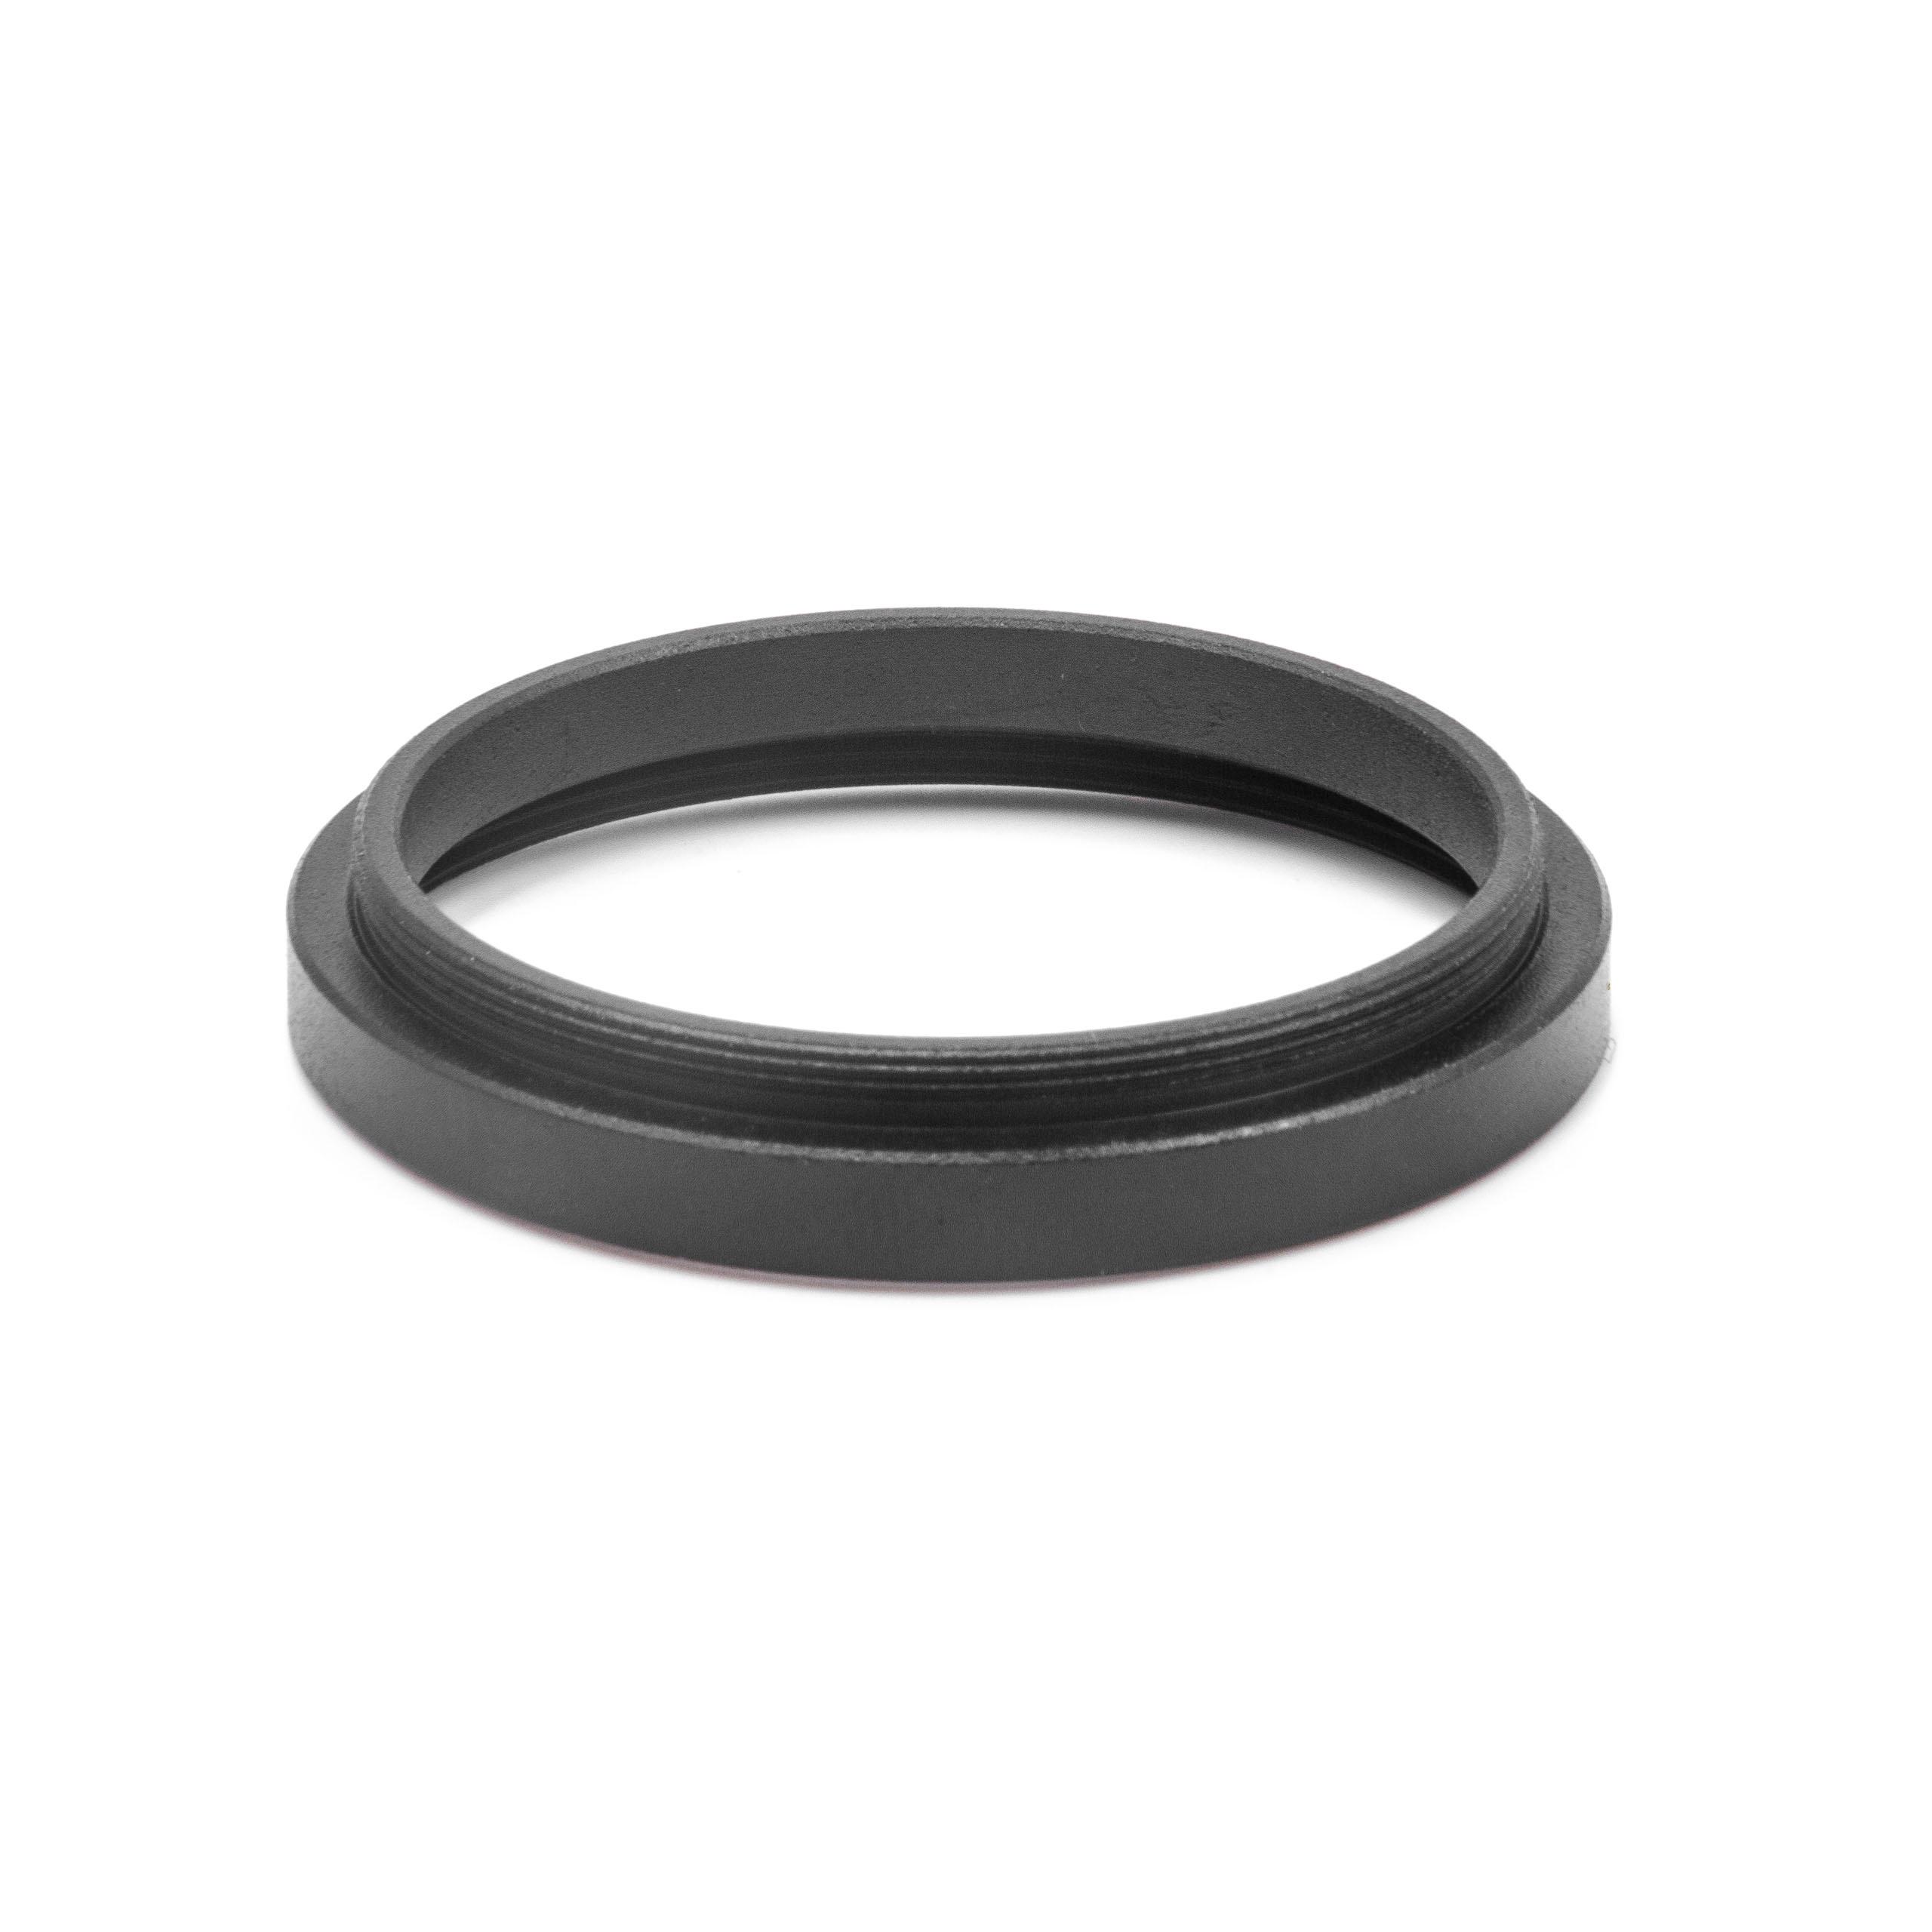 Step-Up-Ring Adapter 35,5 mm auf 37 mm passend für diverse Kamera-Objektive - Filteradapter